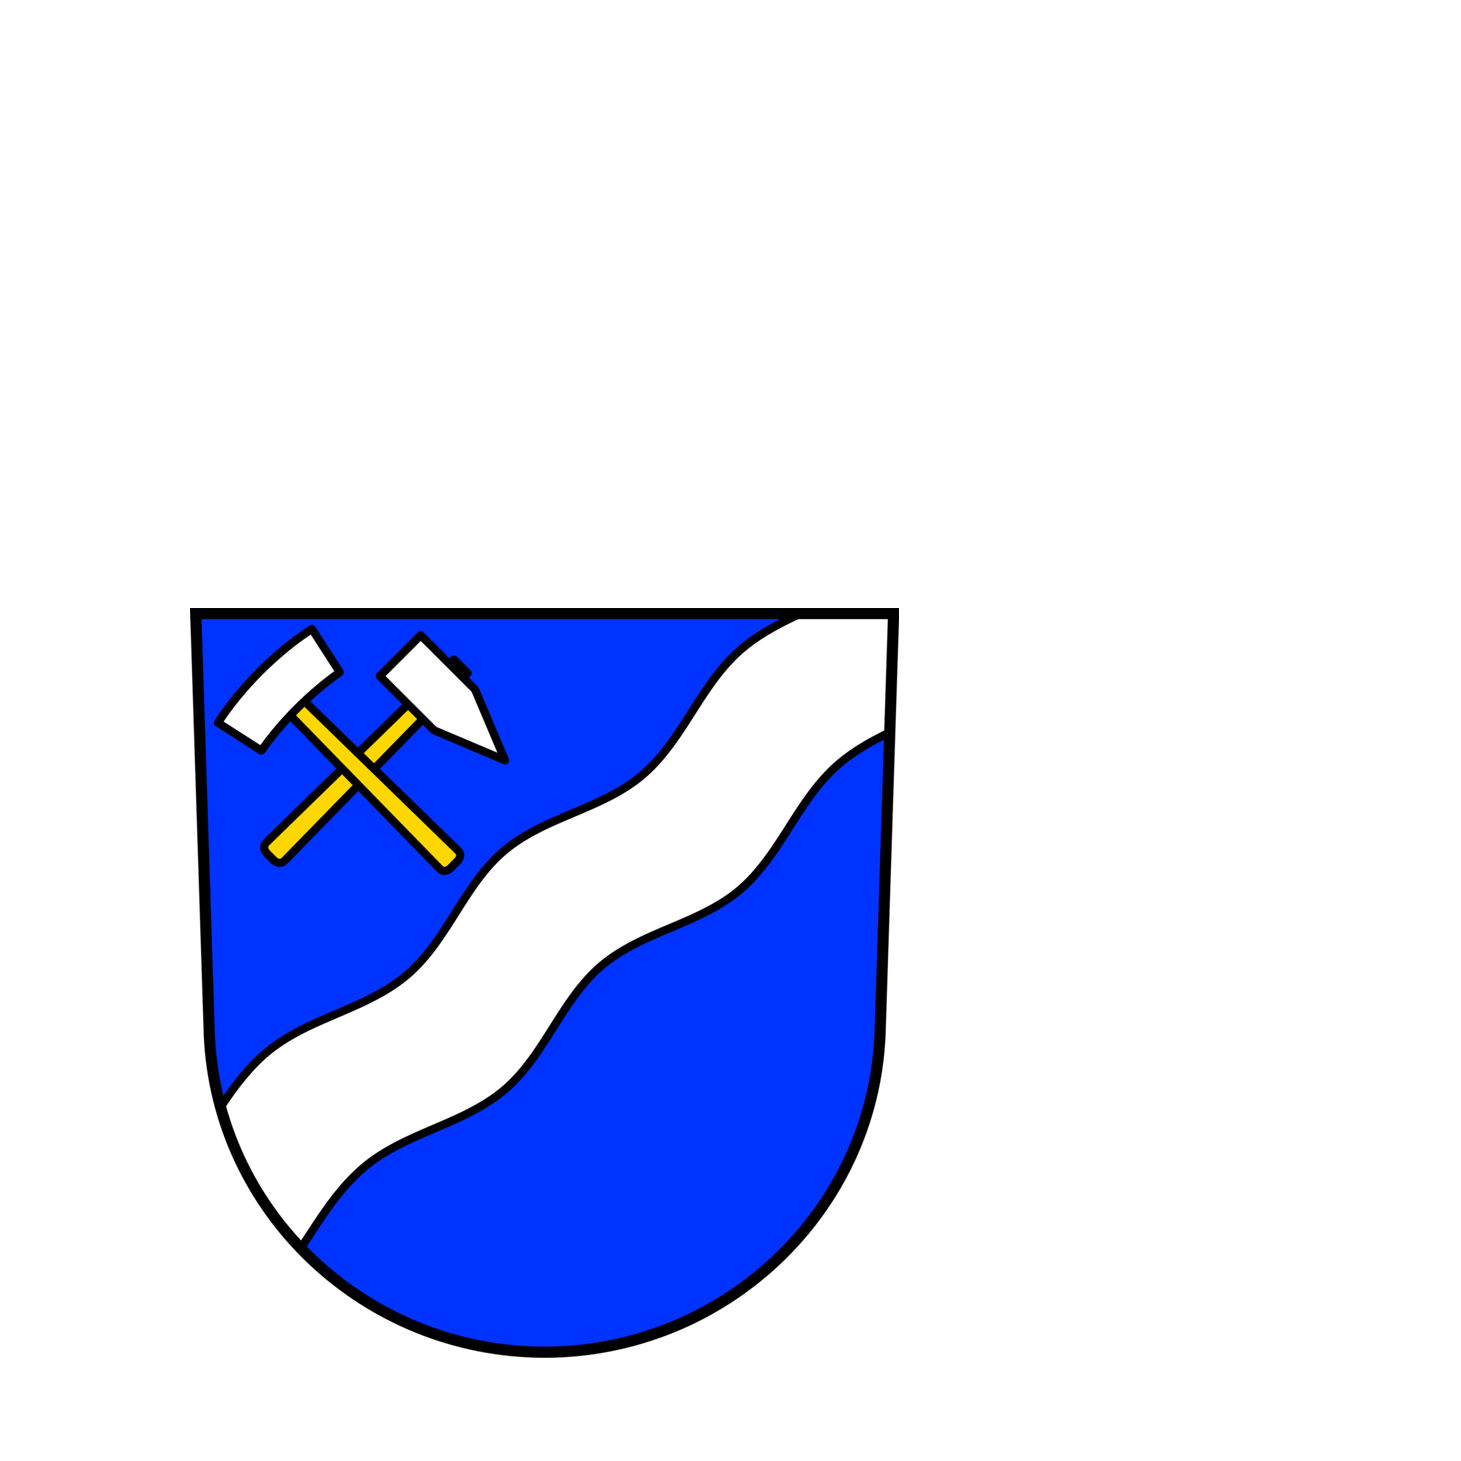 Wappen der Stadt Sulzbach/Saar - © Stadt Sulzbach/Saar